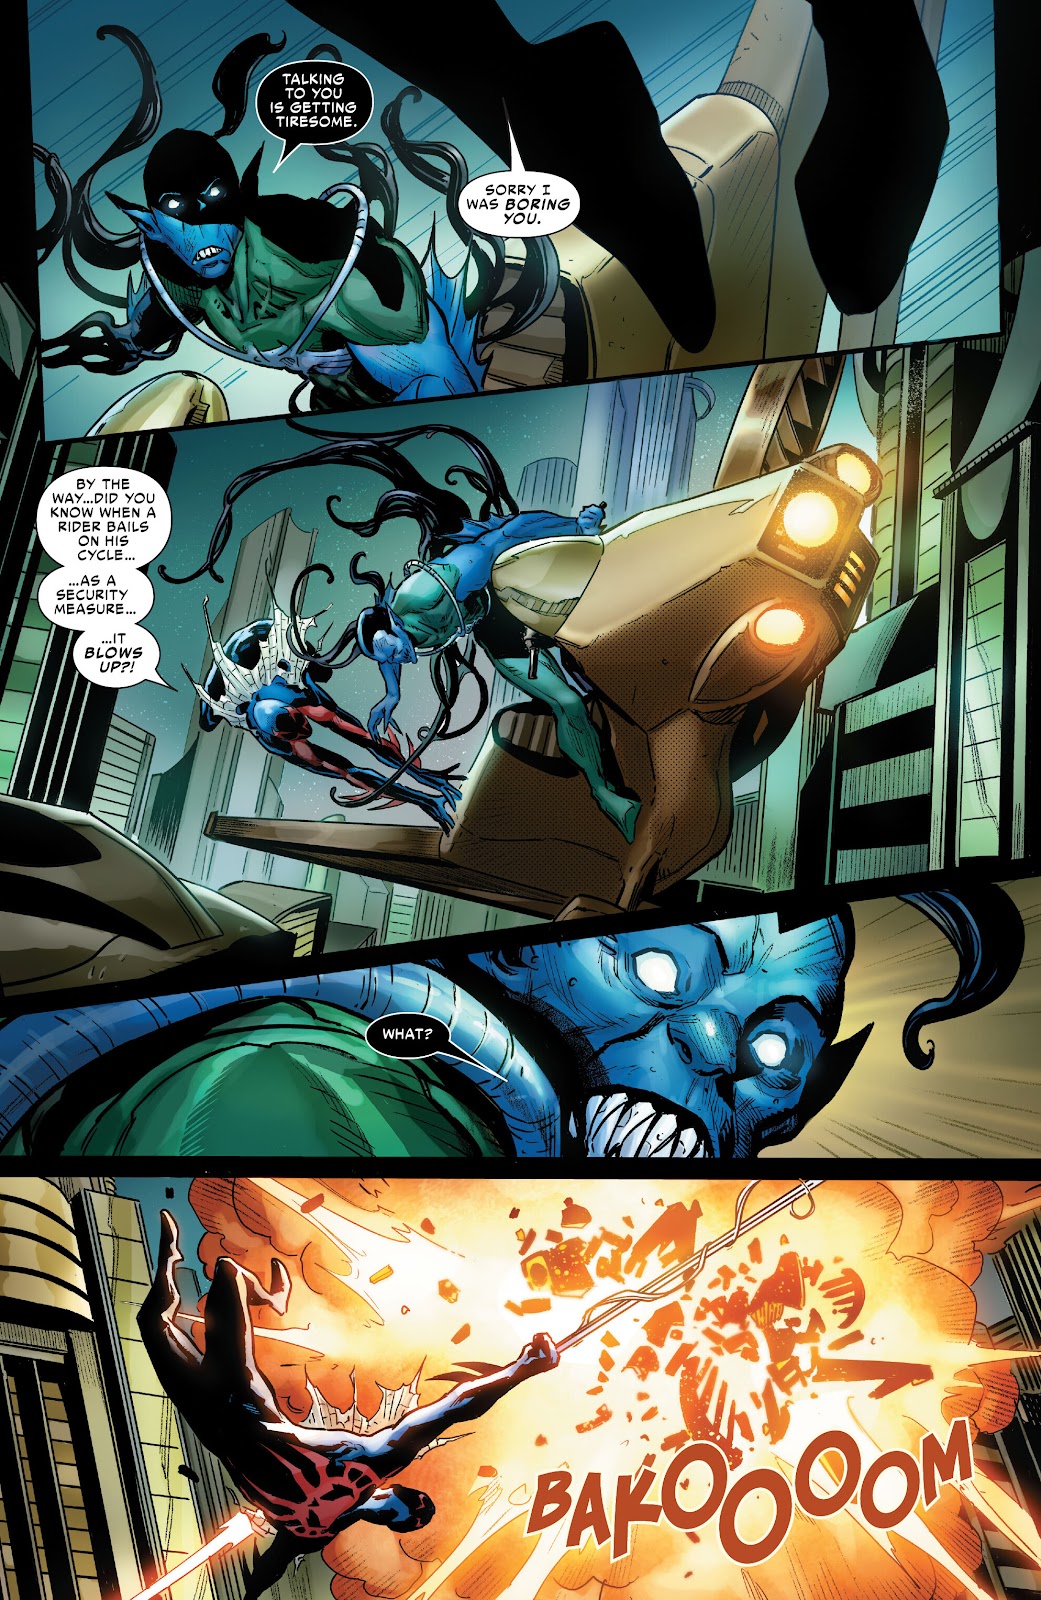 Symbiote Spider-Man 2099 issue 1 - Page 9